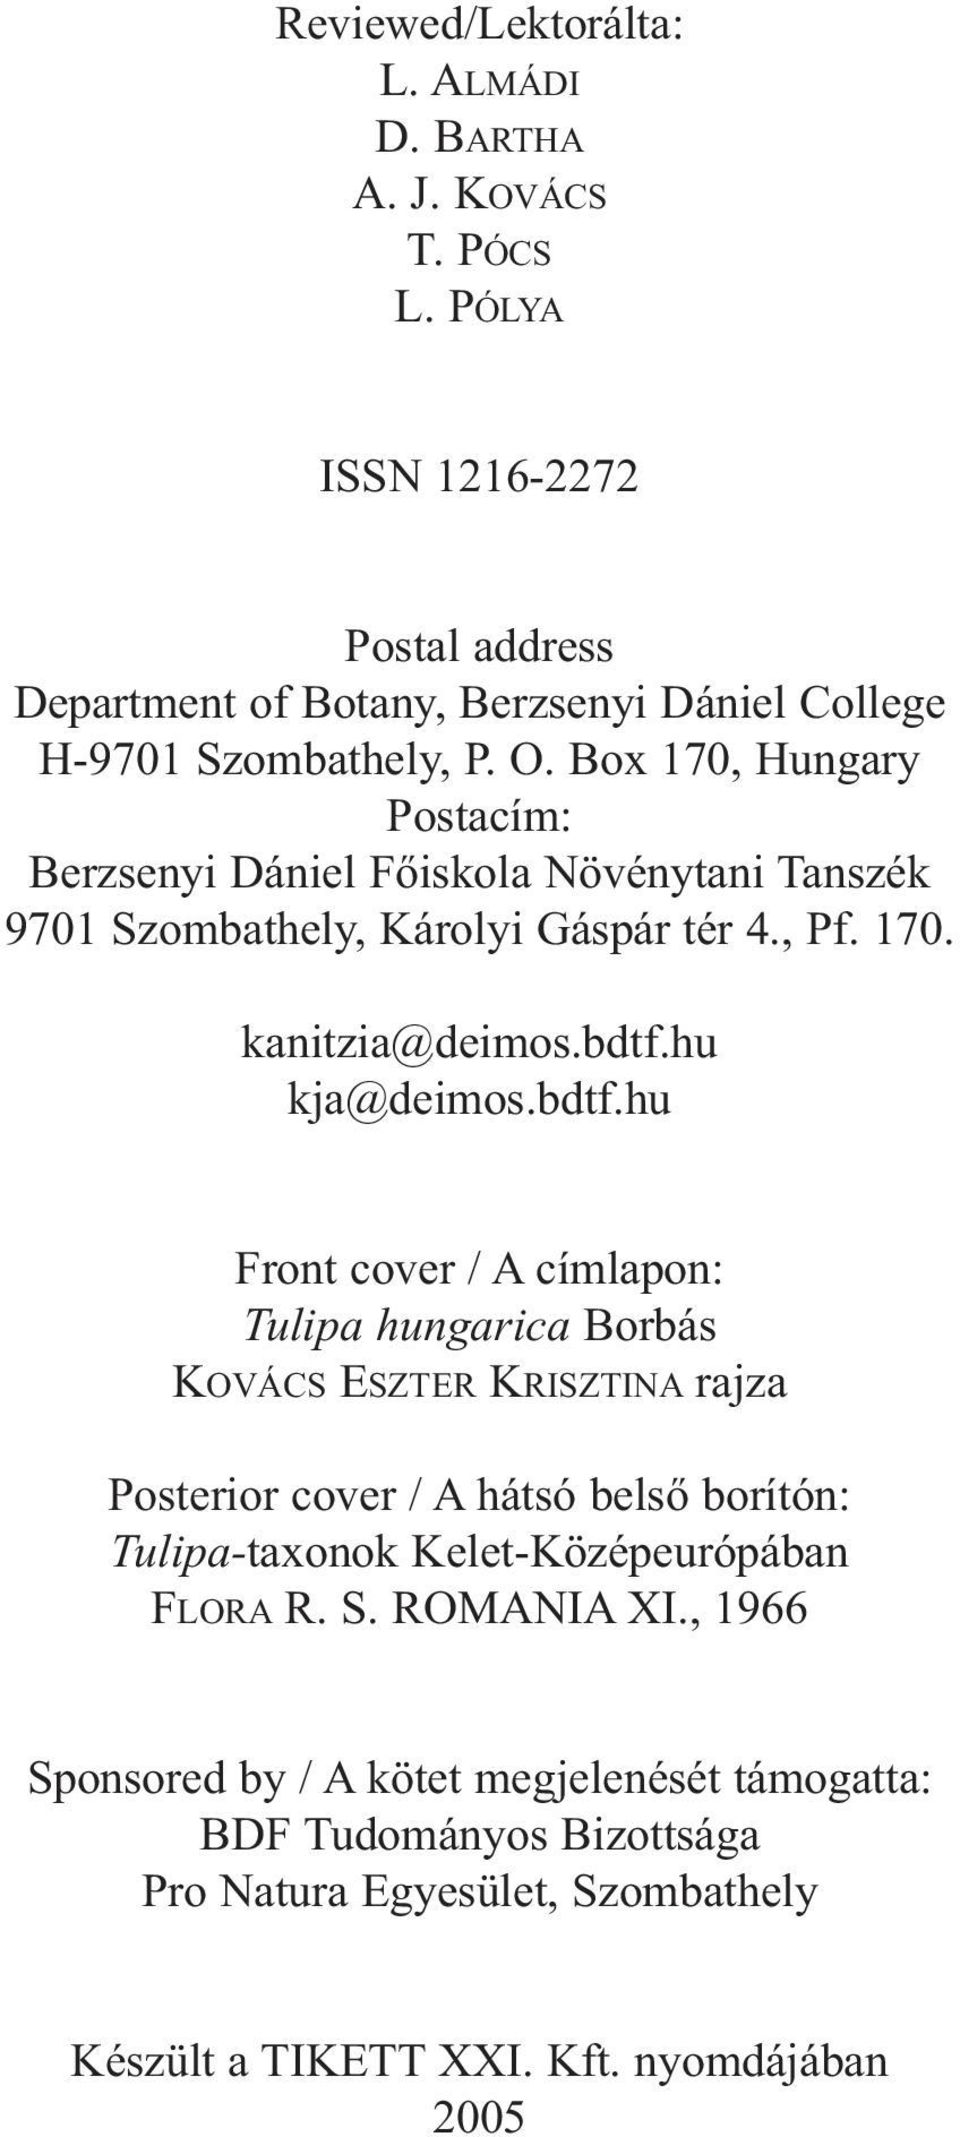 Box 170, Hungary Postacím: Berzsenyi Dániel Főiskola Növénytani Tanszék 9701 Szombathely, Károlyi Gáspár tér 4., Pf. 170. kanitzia@deimos.bdtf.